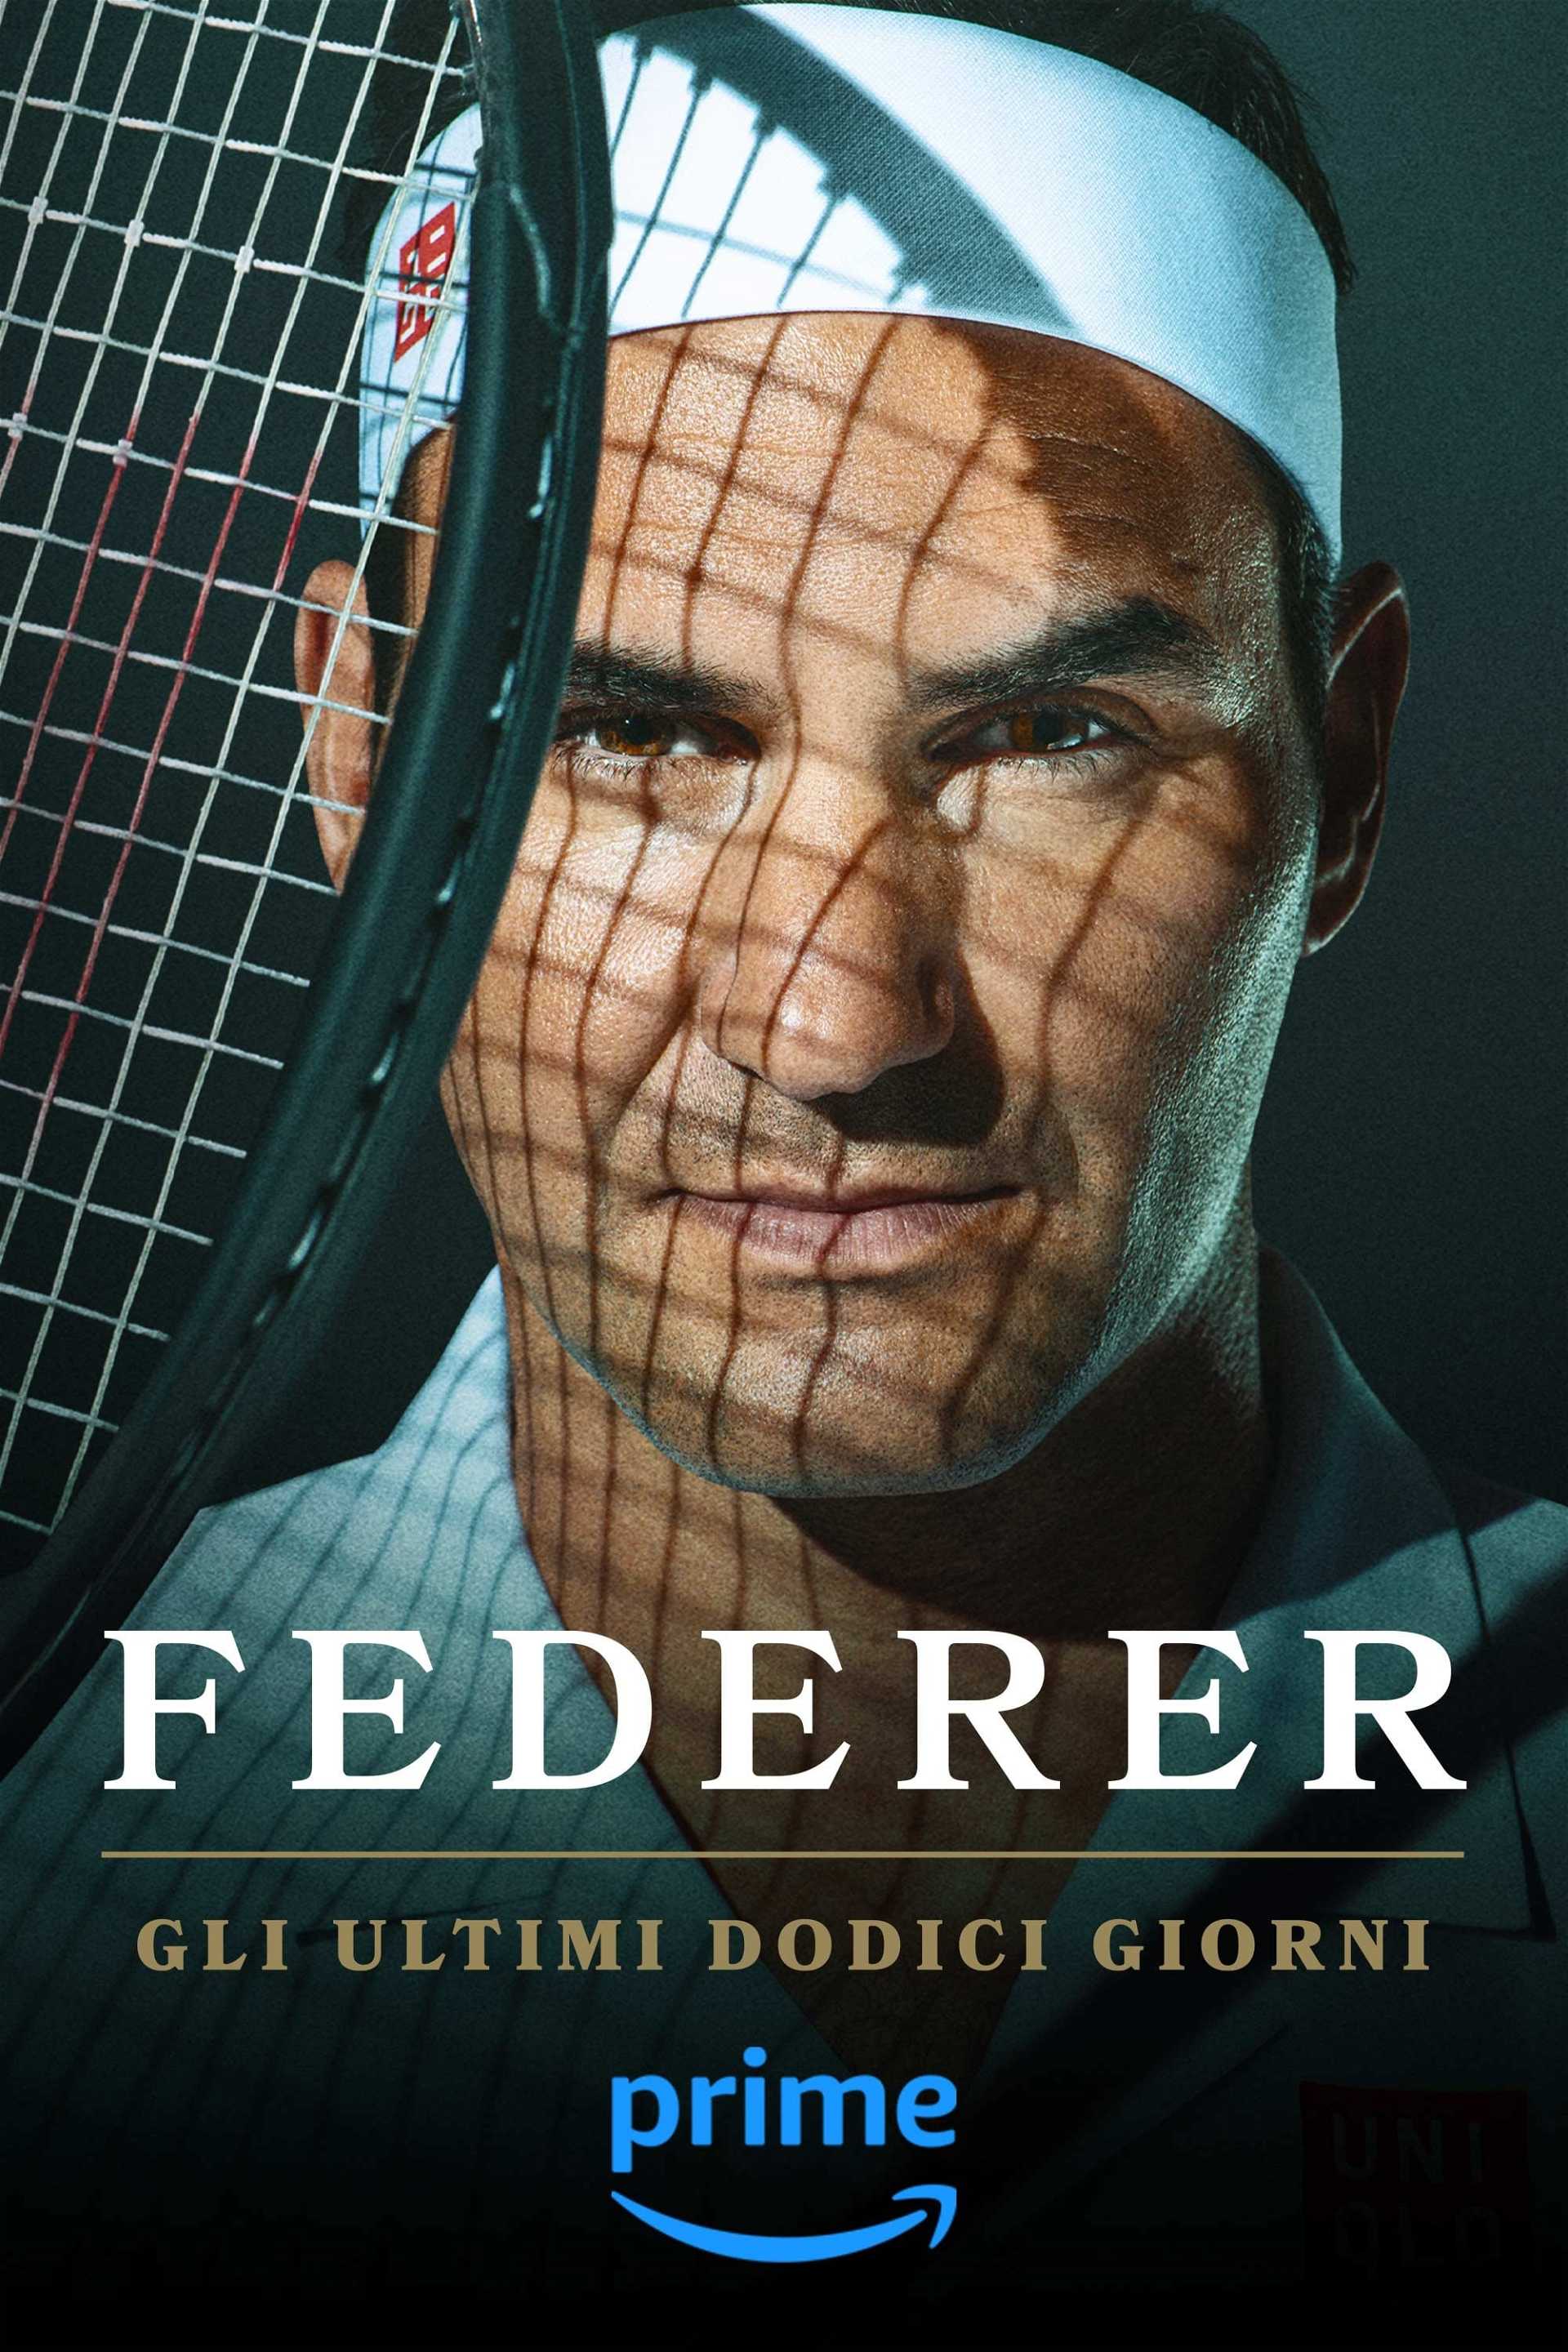 Federer - Gli ultimi dodici giorni [Sub-ITA] in streaming